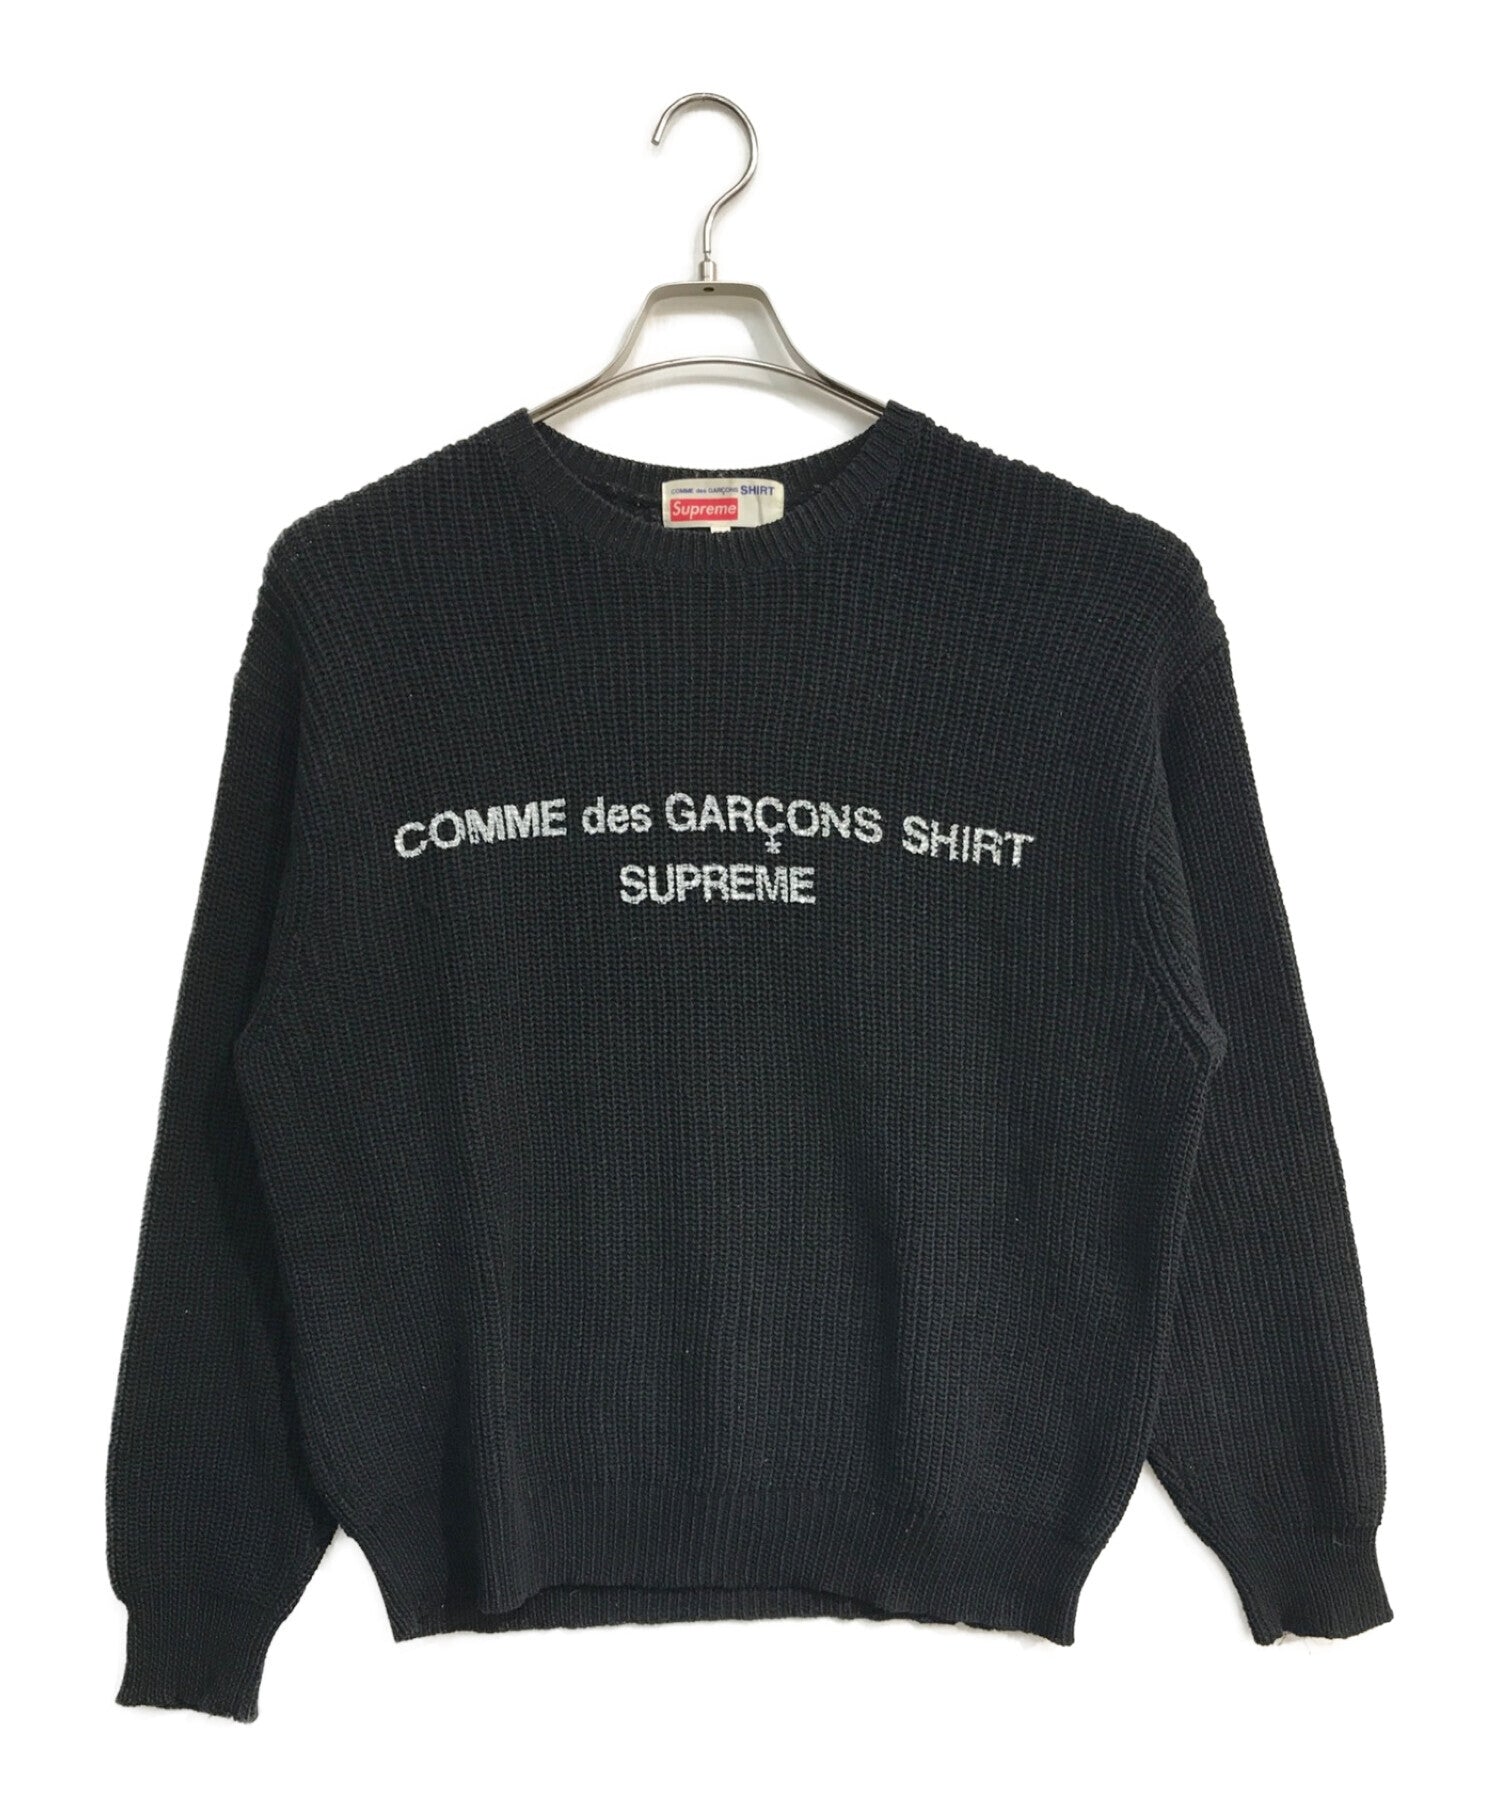 Supreme×Comme des Garcons衬衫徽标油漆船员脖子毛衣| Archive